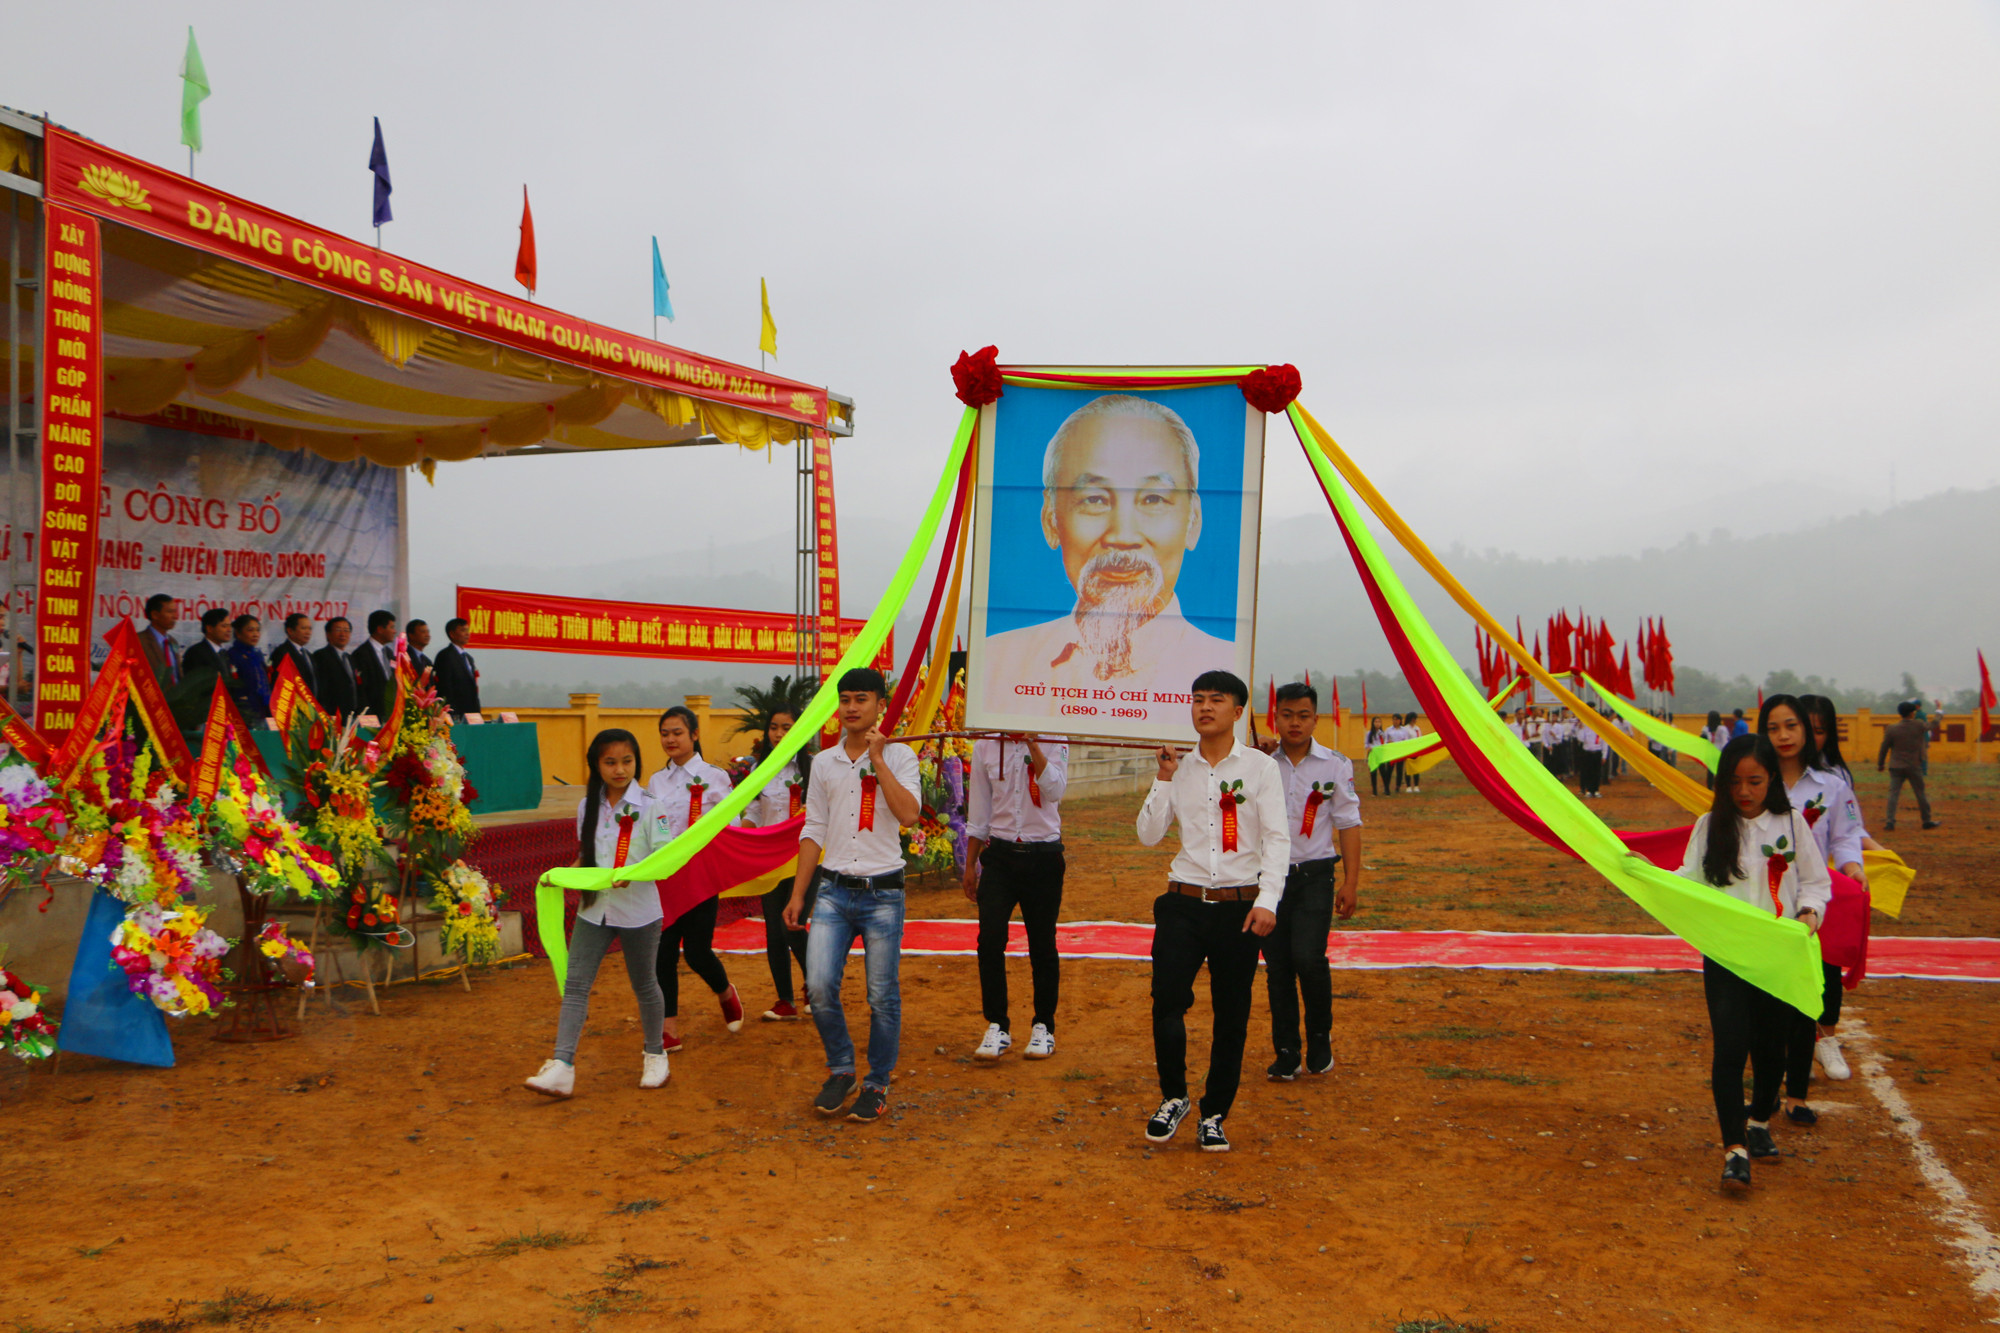 Nghi thức rước ảnh Bác Hồ và hồng kỳ tại lễ đón Bằng công nhận đạt chuẩn NTM xã Tam Quang. Ảnh: Nguyễn Hải